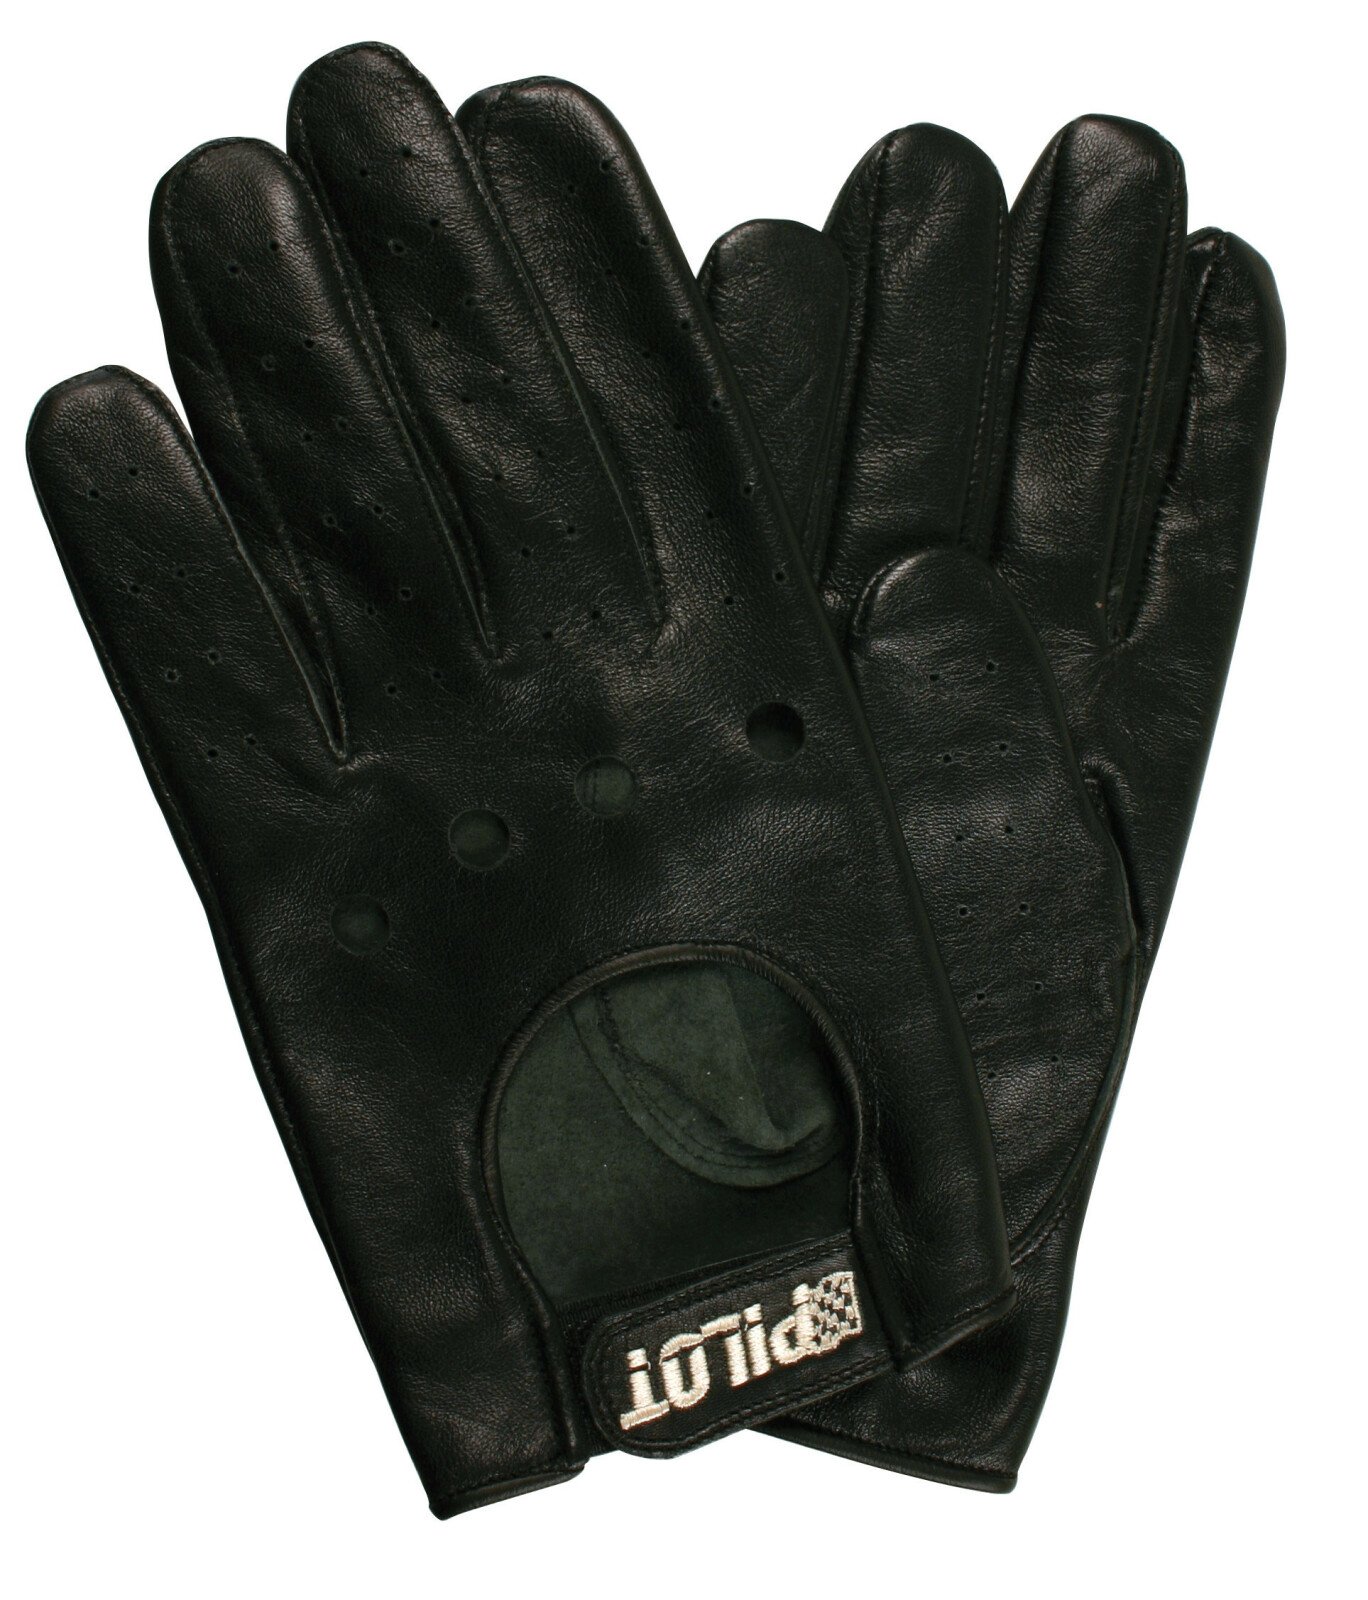 Pilot-3 driving gloves - L - Black thumb